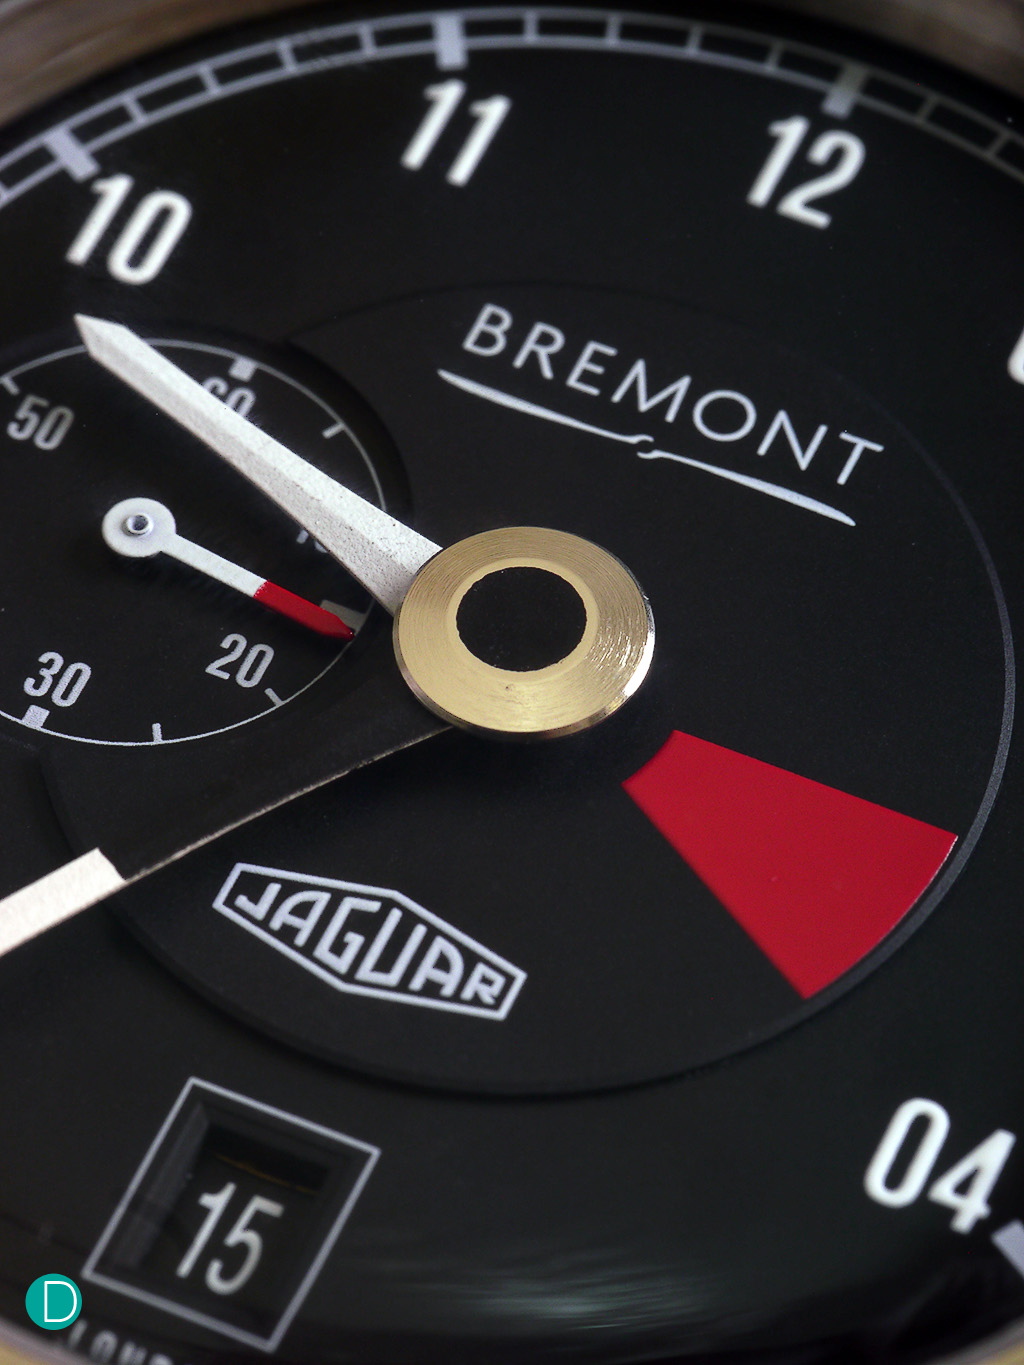 The Bremont Jaguar Mk1 dial carries the insignia of the original Jaguar logo.